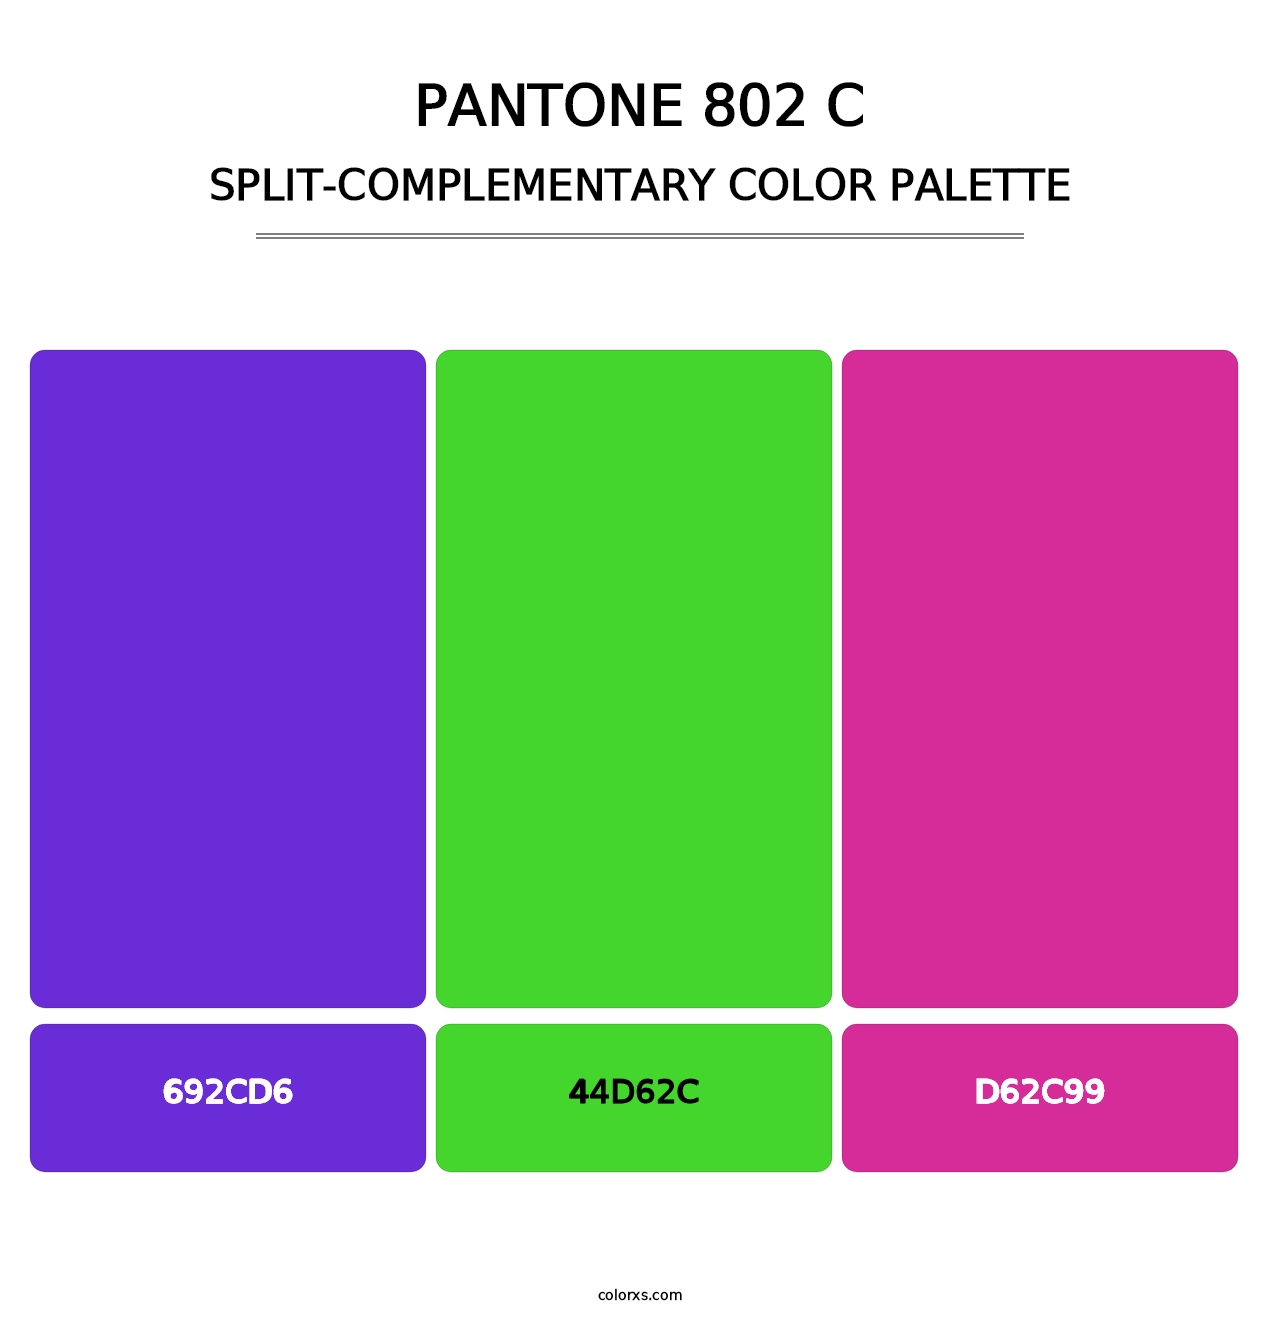 PANTONE 802 C - Split-Complementary Color Palette